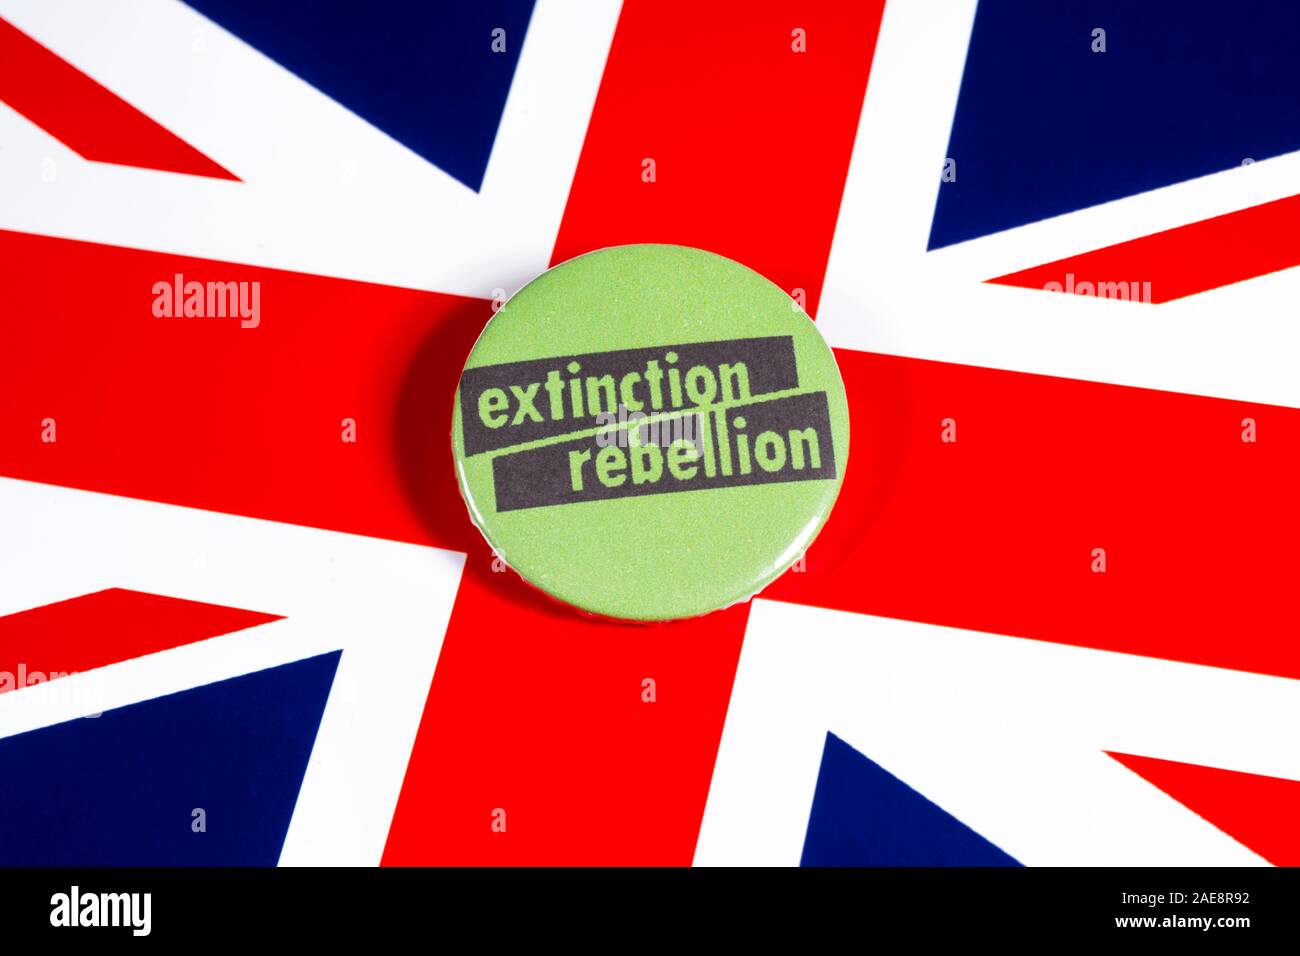 Londres, Reino Unido - 22 de noviembre 2019: El símbolo de la rebelión de extinción - el movimiento ambiental mundial, ilustra sobre la bandera del Reino Unido. Foto de stock